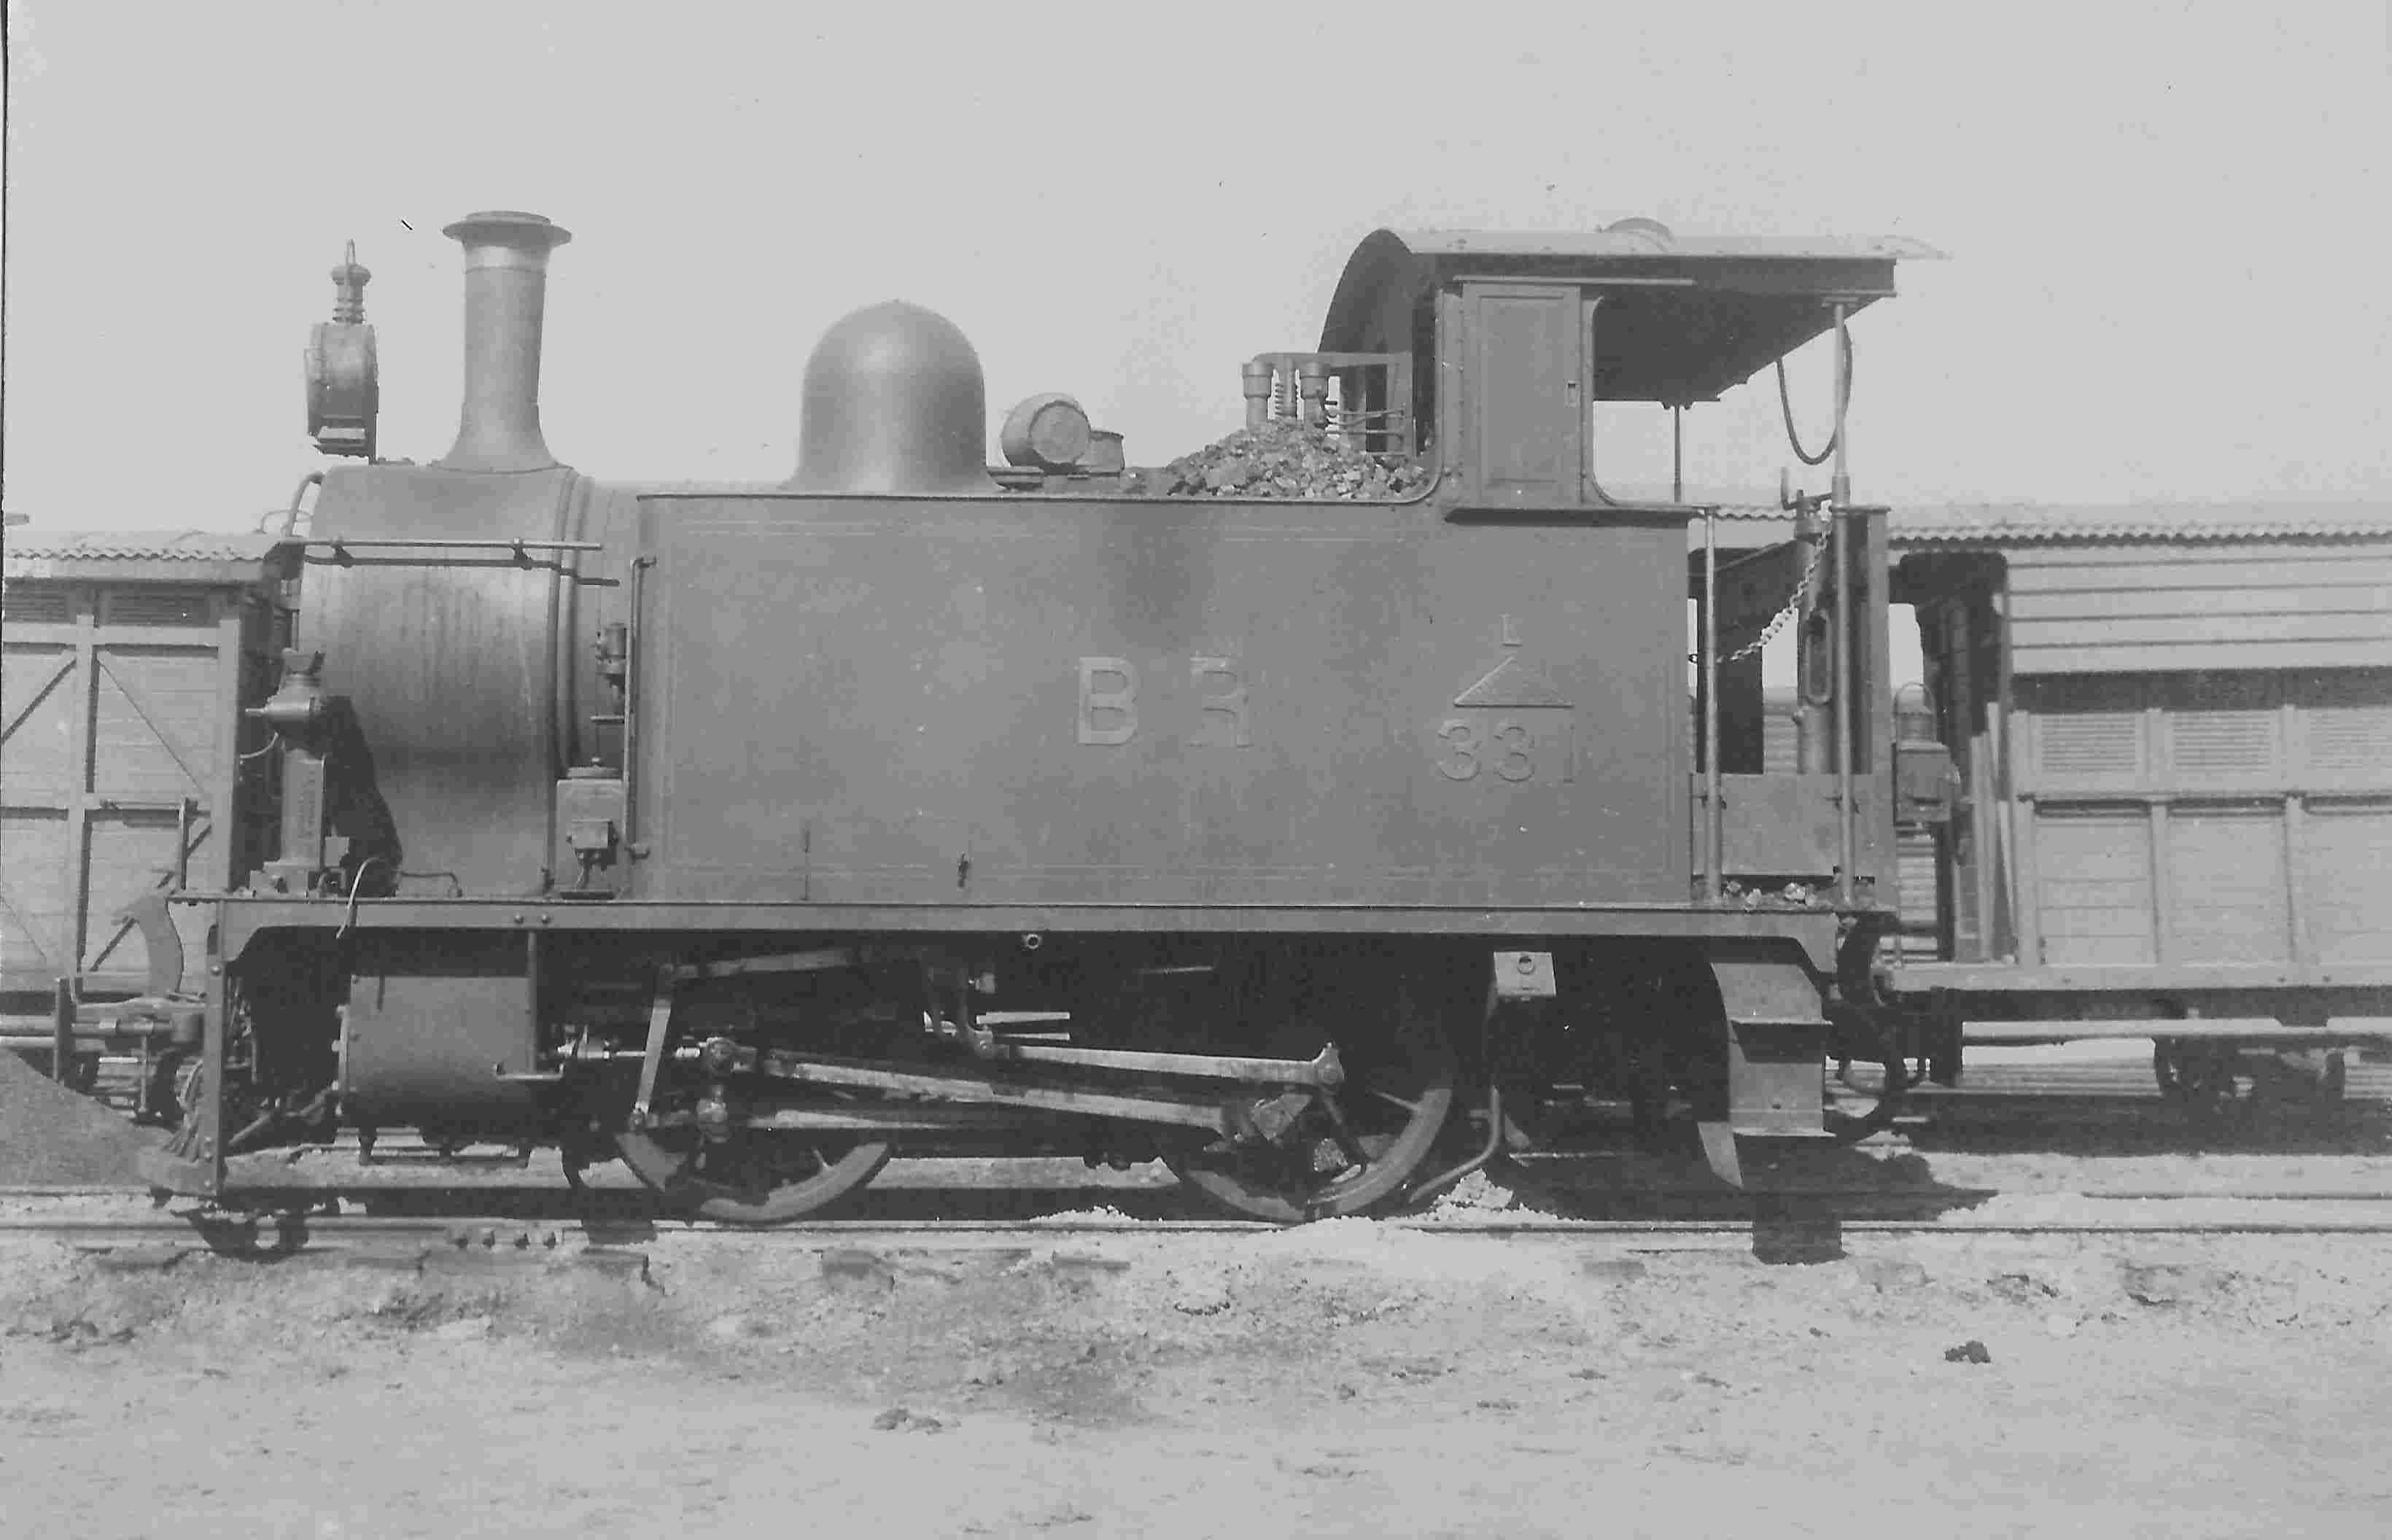 Burma Railways 0-4-0T no. 331